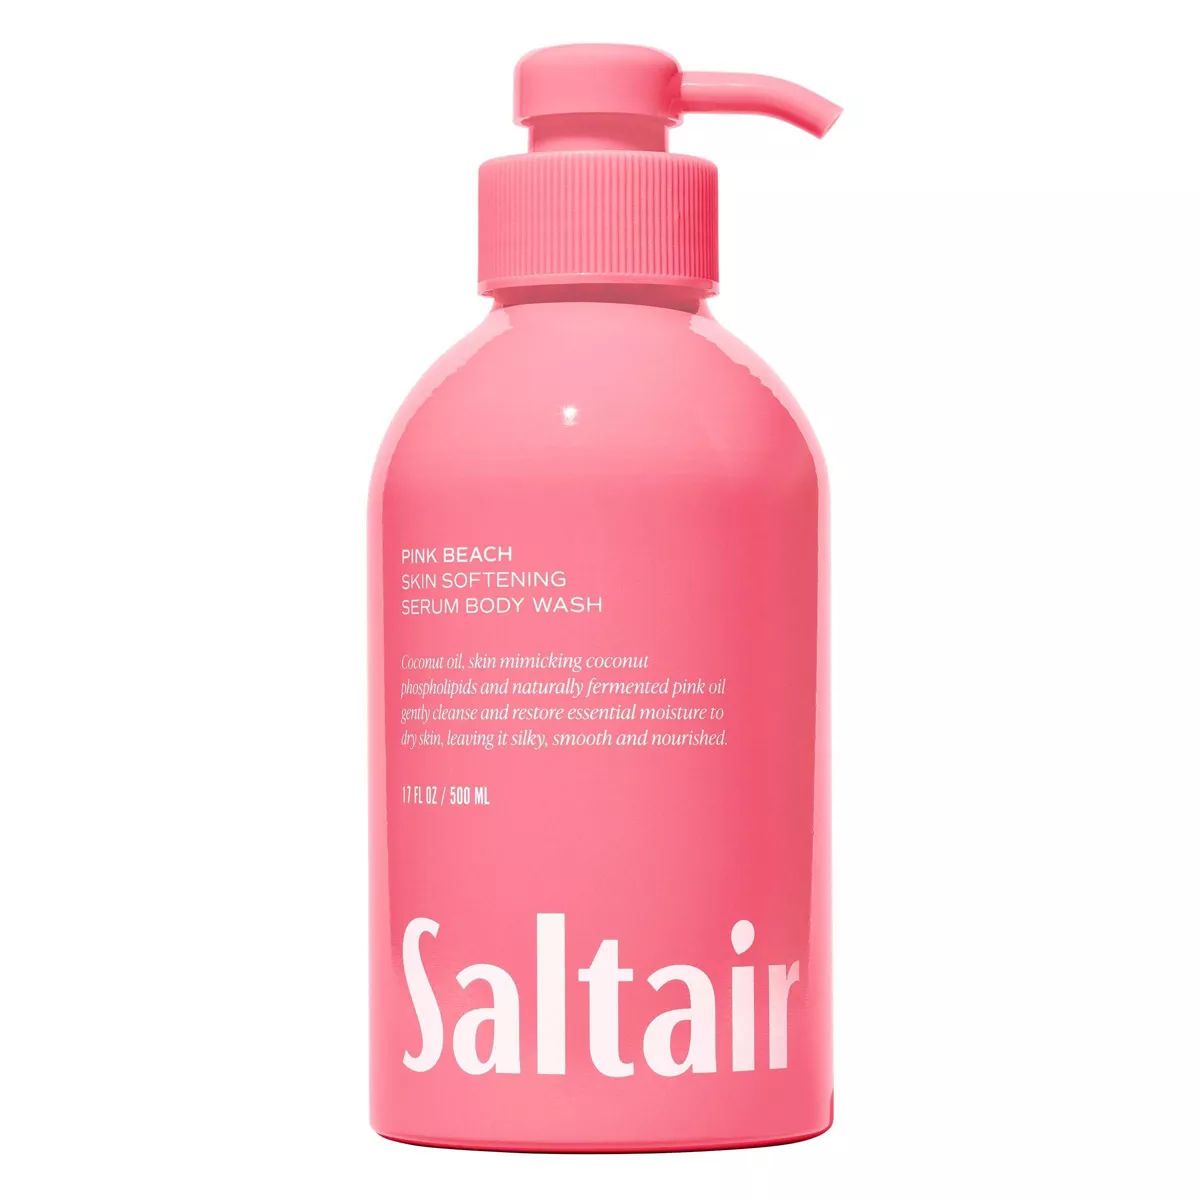 Saltair Pink Beach Serum Body Wash - Coconut Scent - 17 fl oz | Target